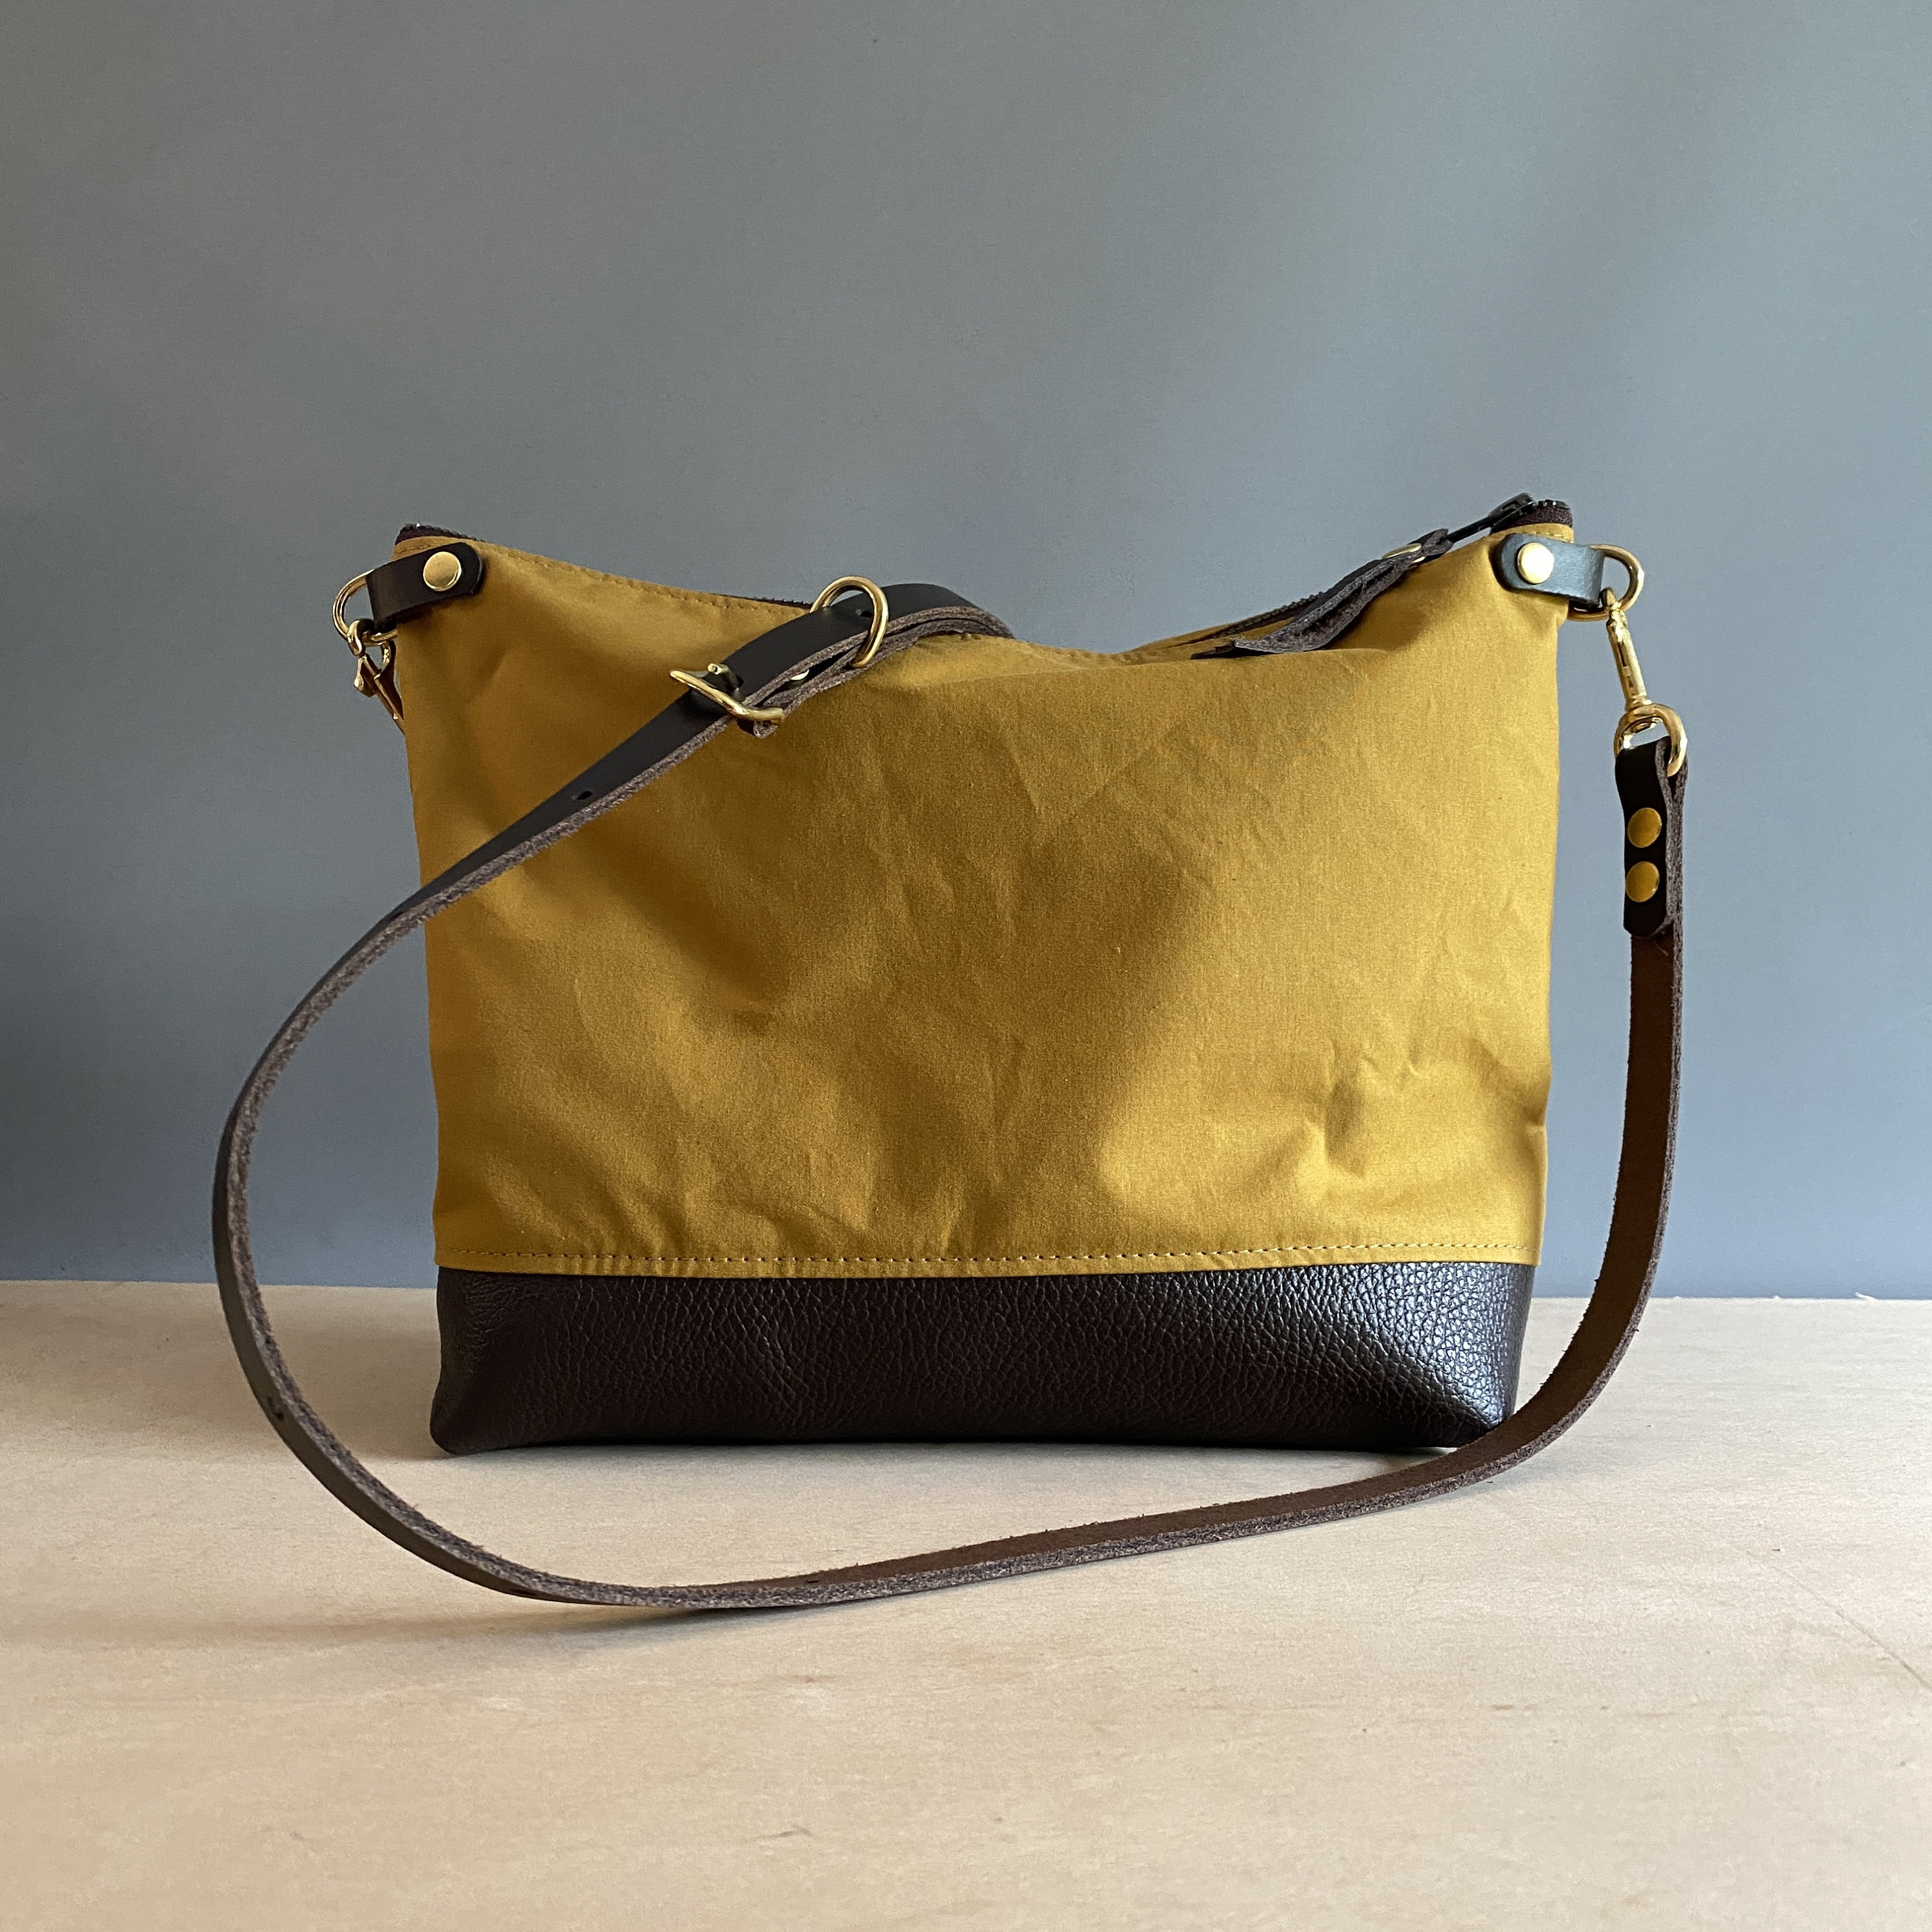 66 Inch Shoulder Strap, Replacement Adjustable Strap For Briefcase  Messenger Bag Duffel Bag